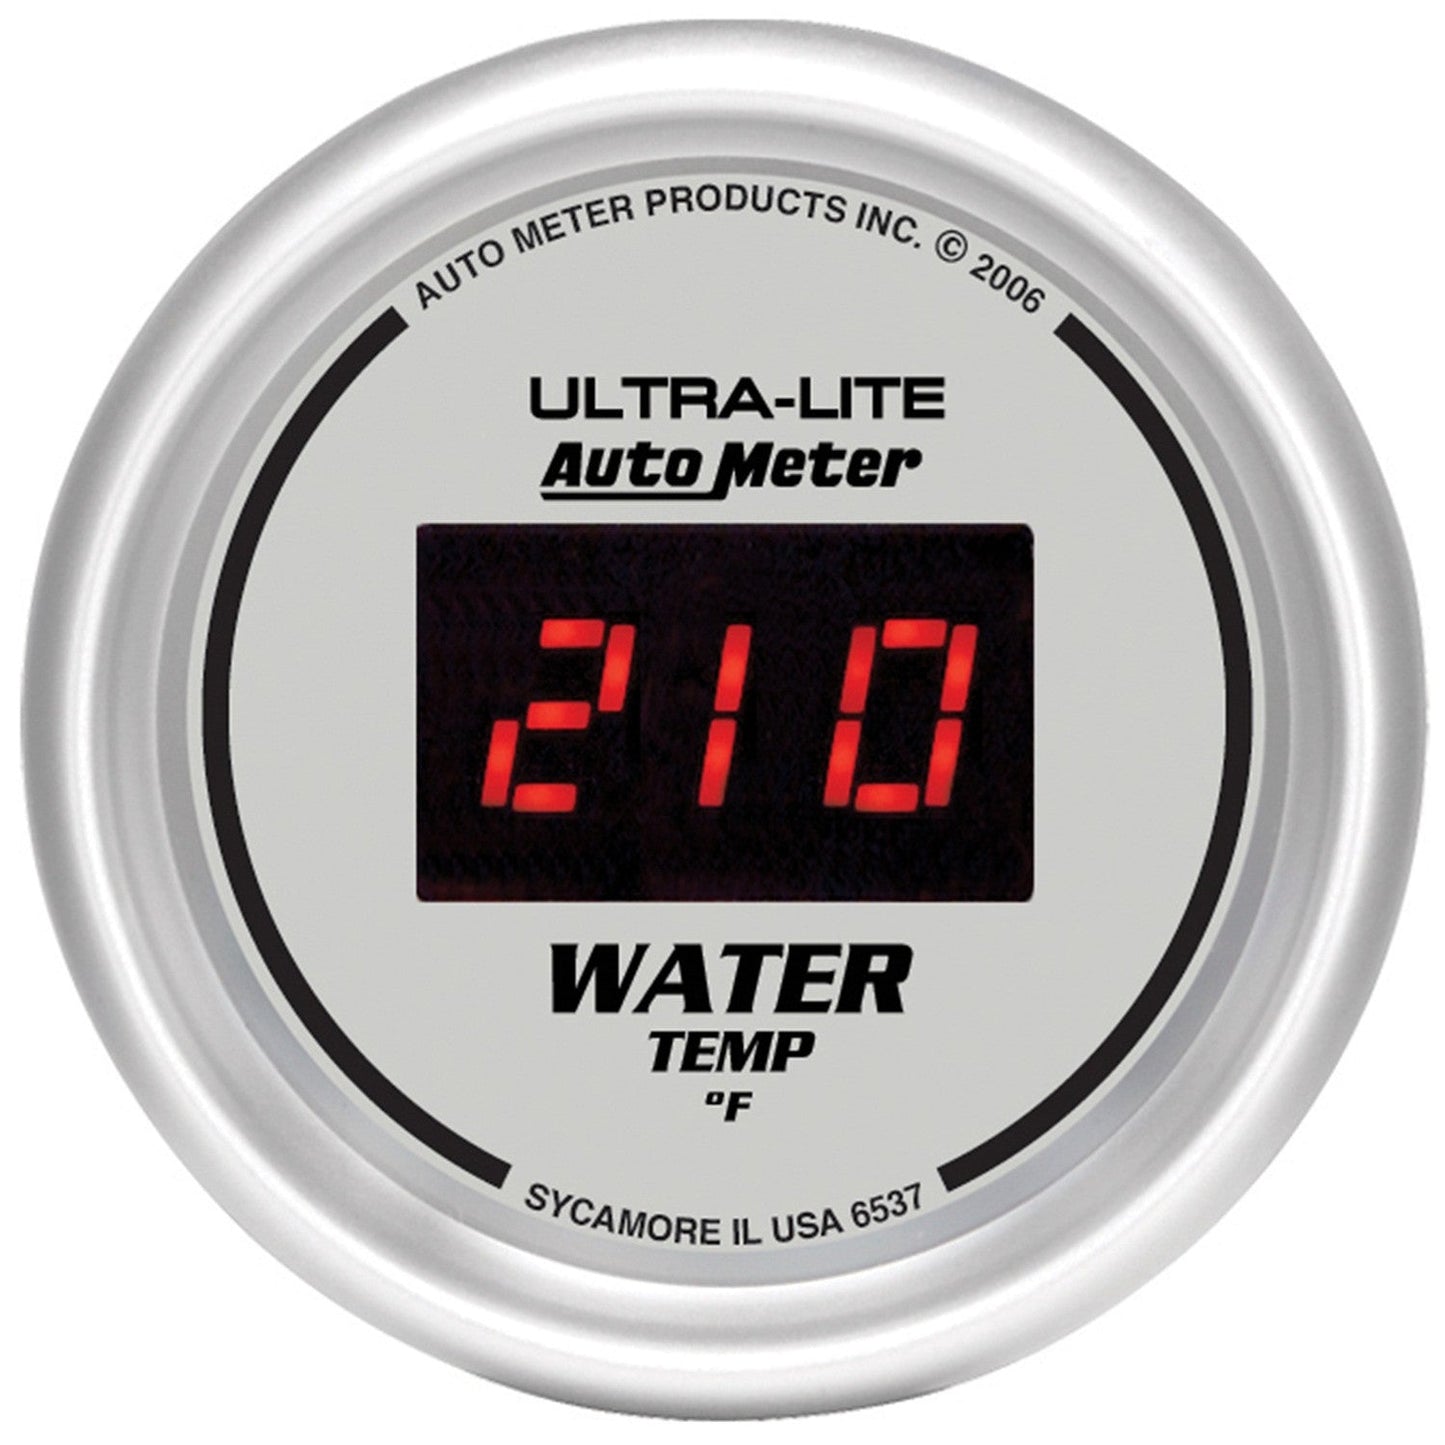 AutoMeter - 2-1/16" WATER TEMPERATURE, 0-340 °F, ULTRA-LITE DIGITAL (6537)